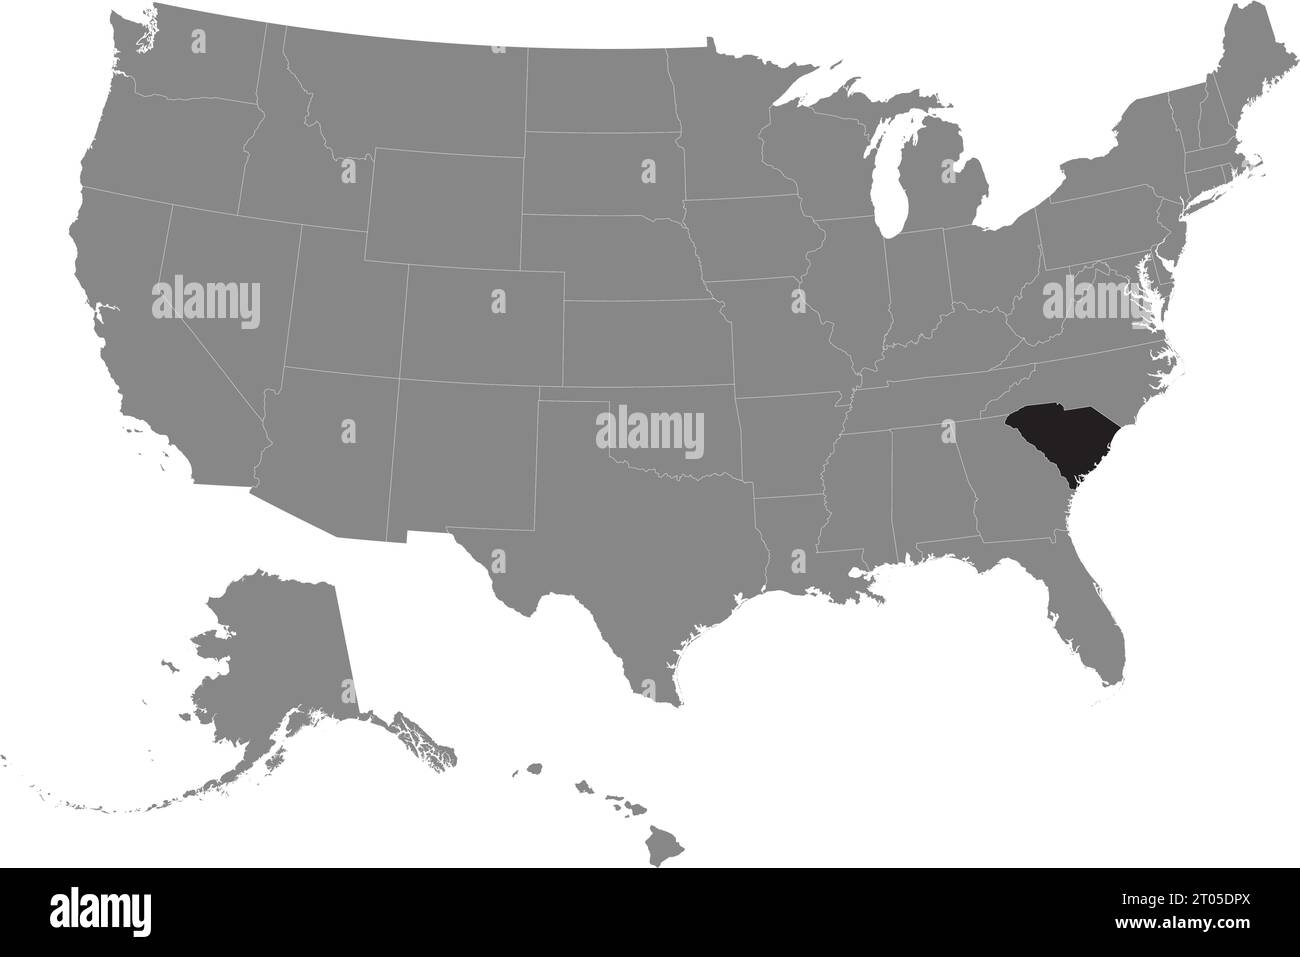 Schwarze CMYK-Bundeskarte von SOUTH CAROLINA in detaillierter grauer, leerer politischer Karte der Vereinigten Staaten von Amerika auf transparentem Hintergrund Stock Vektor